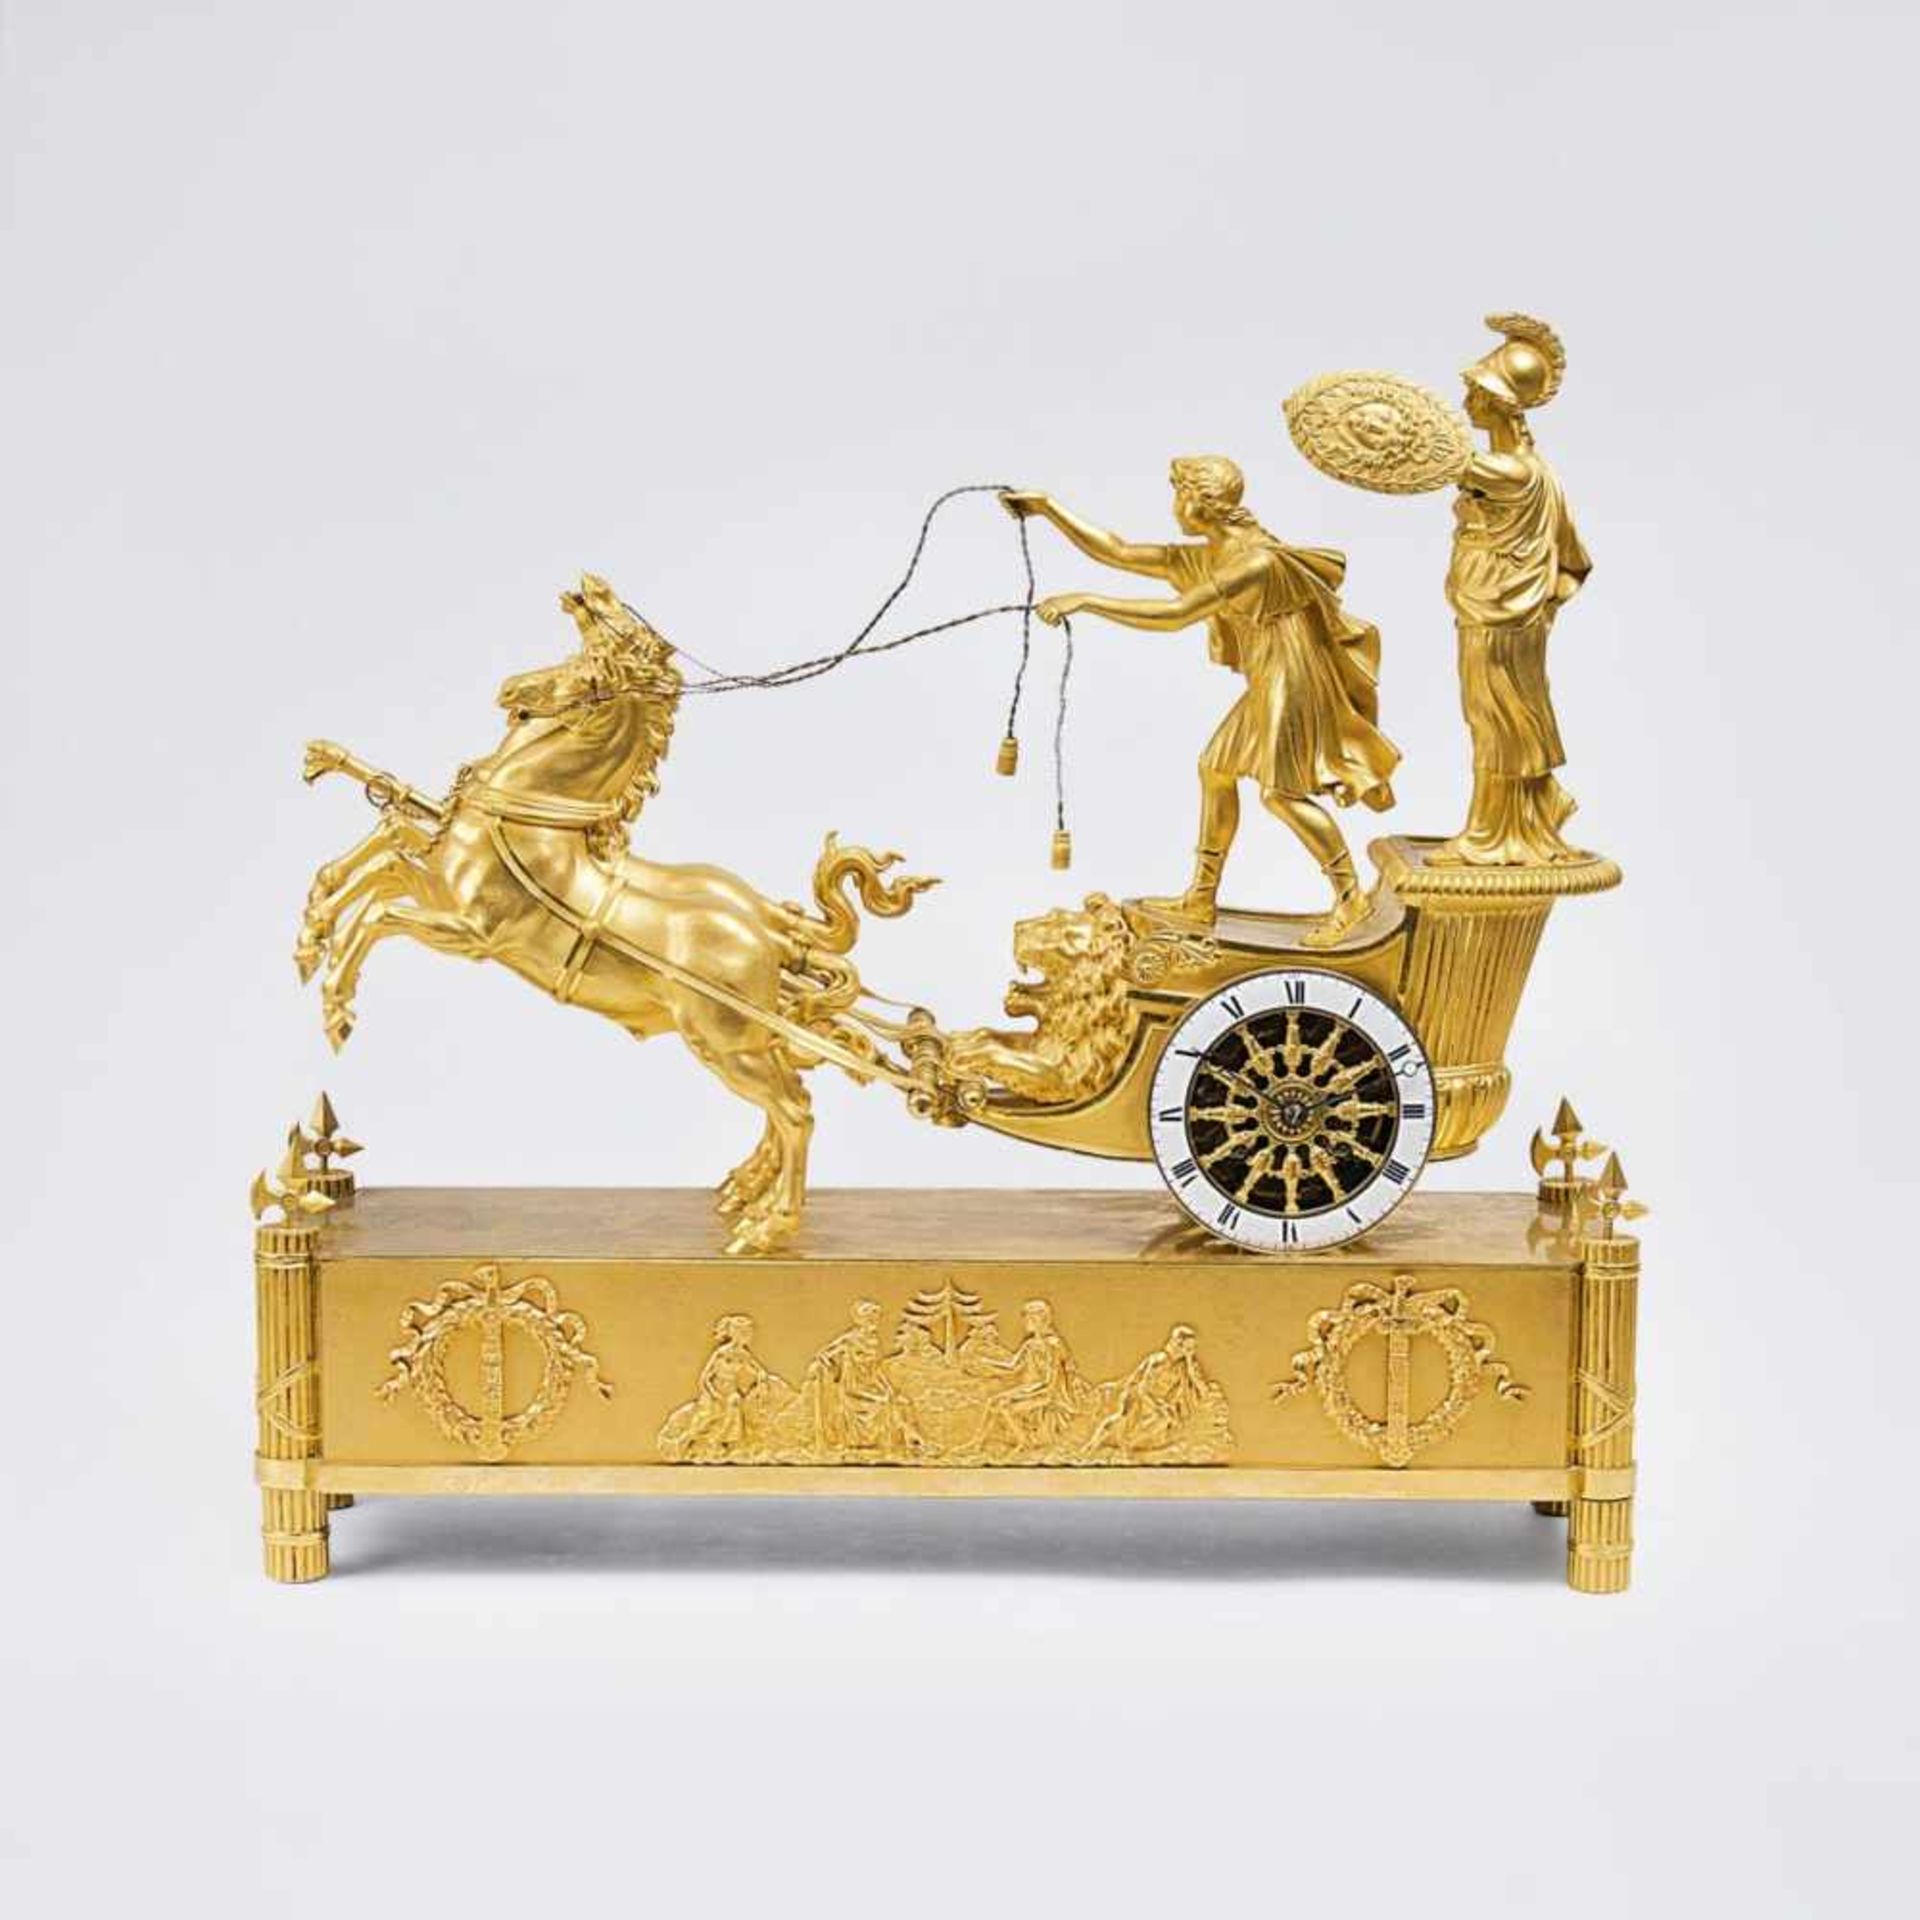 Reiche, Jean-AndréBronzier, Paris, active 1752-1817, attr.An opulent Empire Pendule 'Chariot of